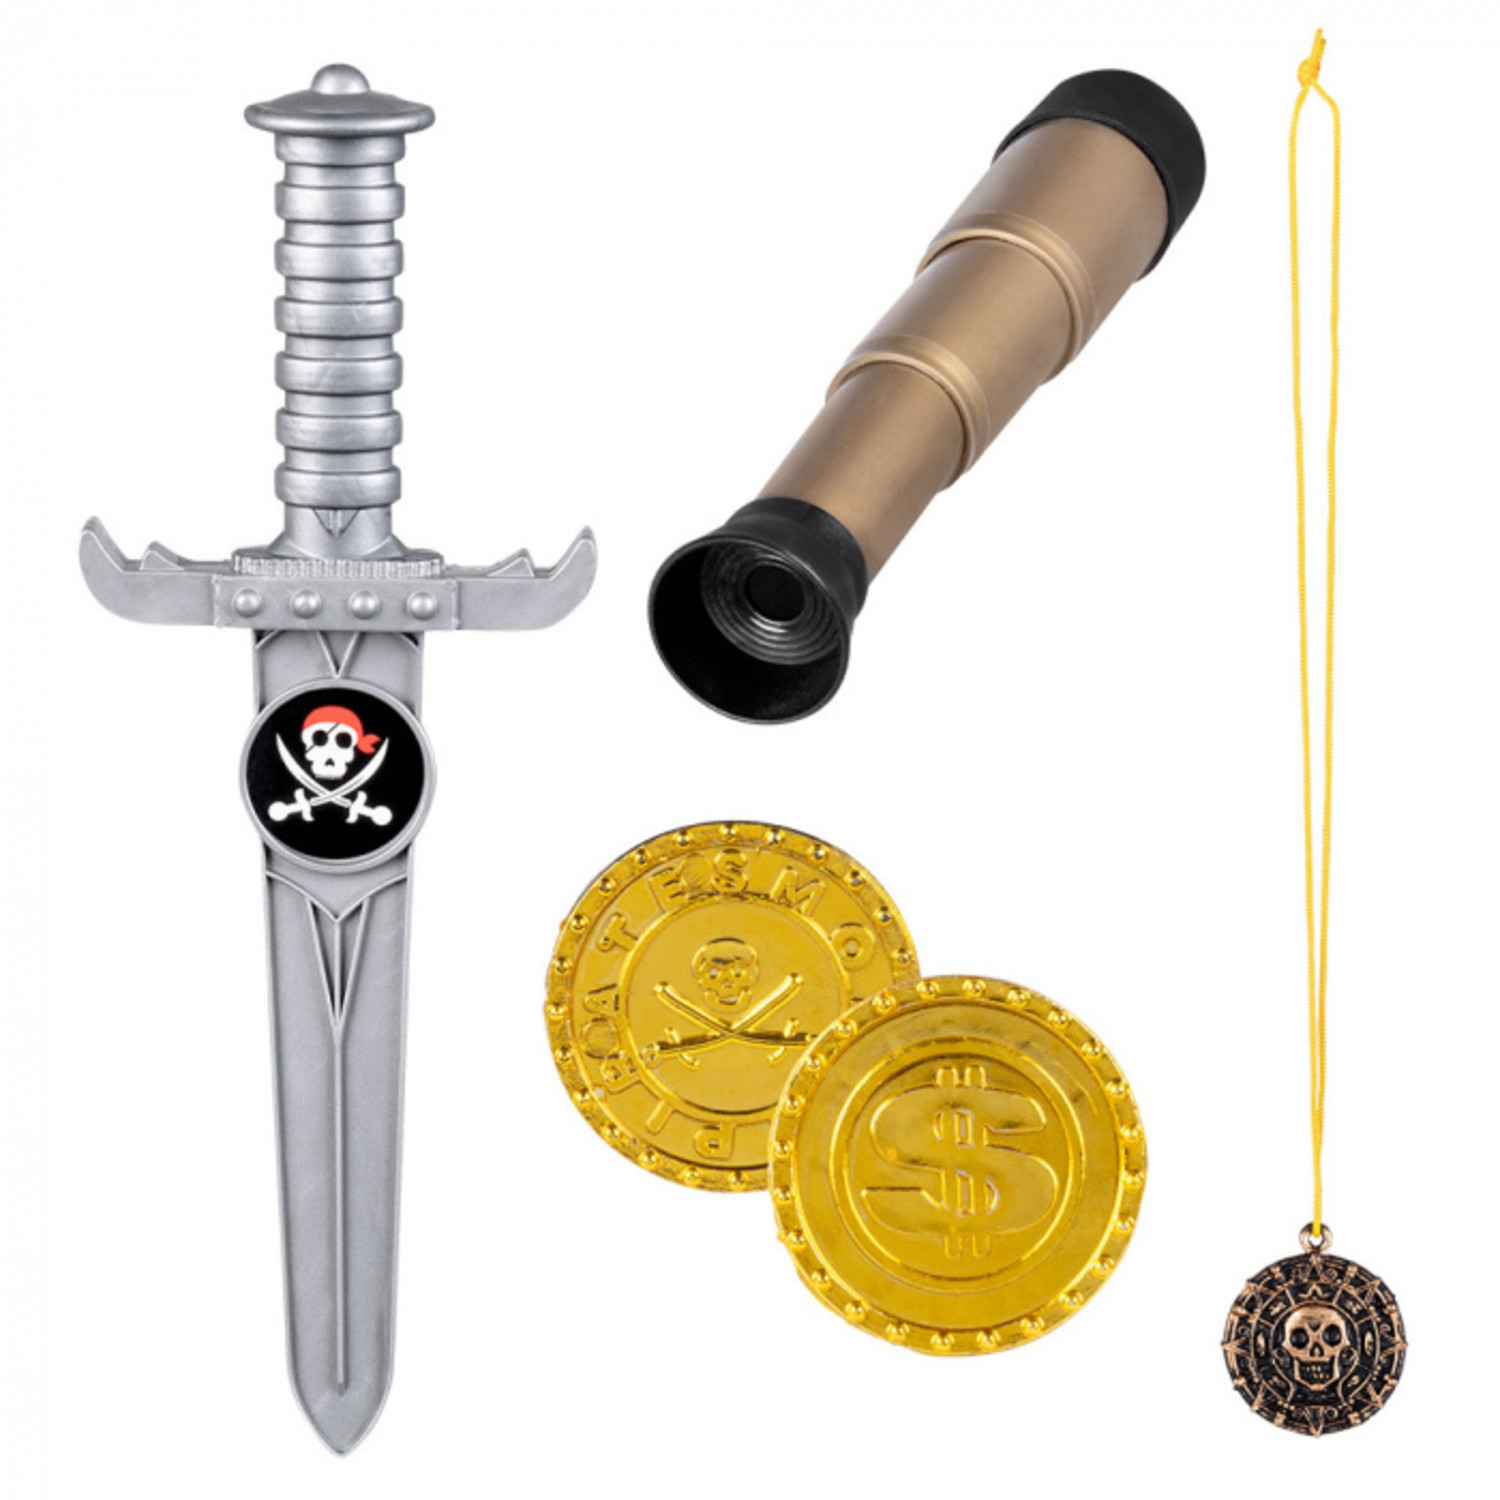 Piraten accessoires kopen bij Tuf-Tuf? voorraad leverbaar | Tuf-Tuf Nederland